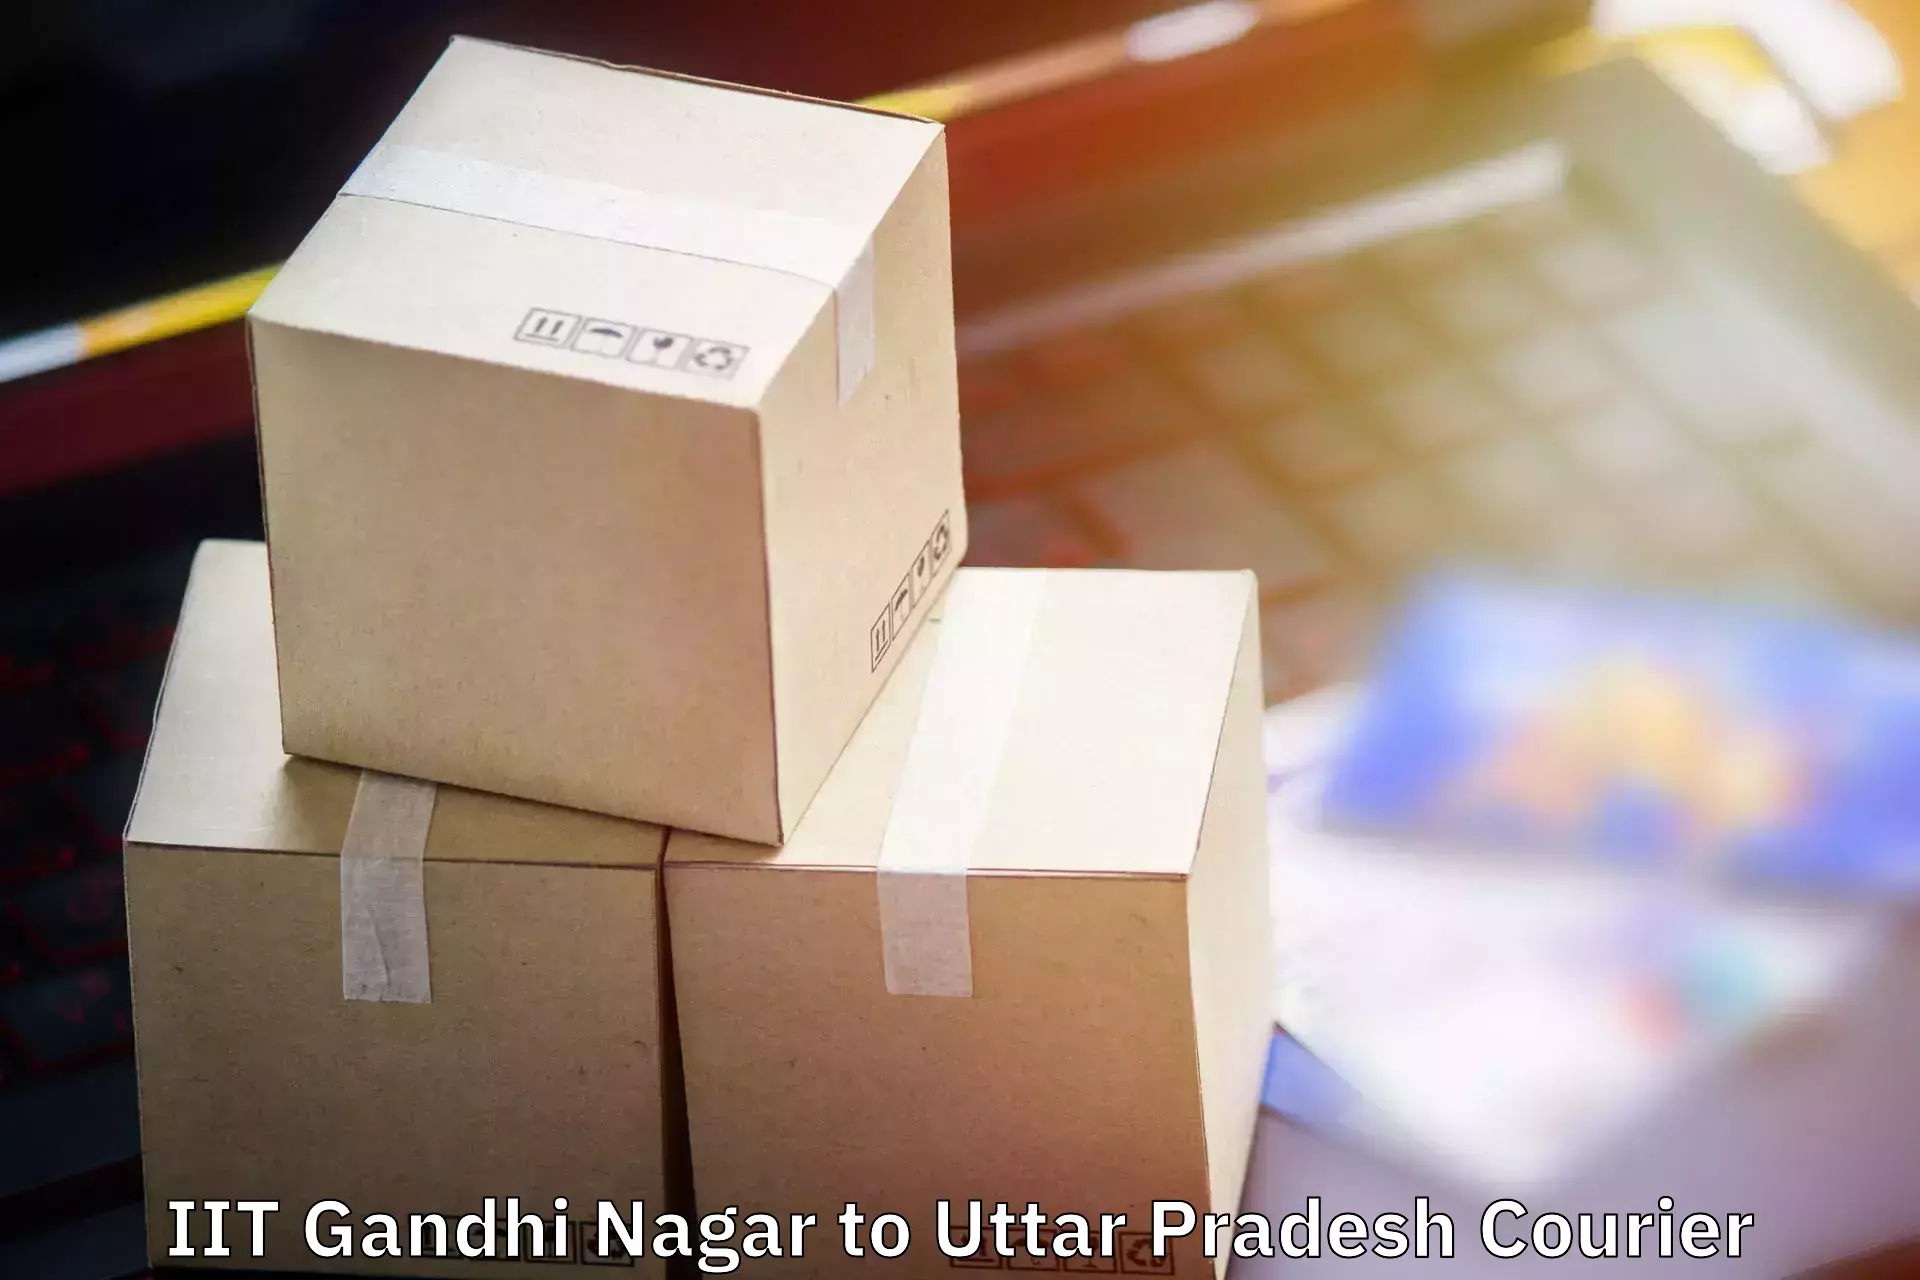 Nationwide luggage courier IIT Gandhi Nagar to Prayagraj